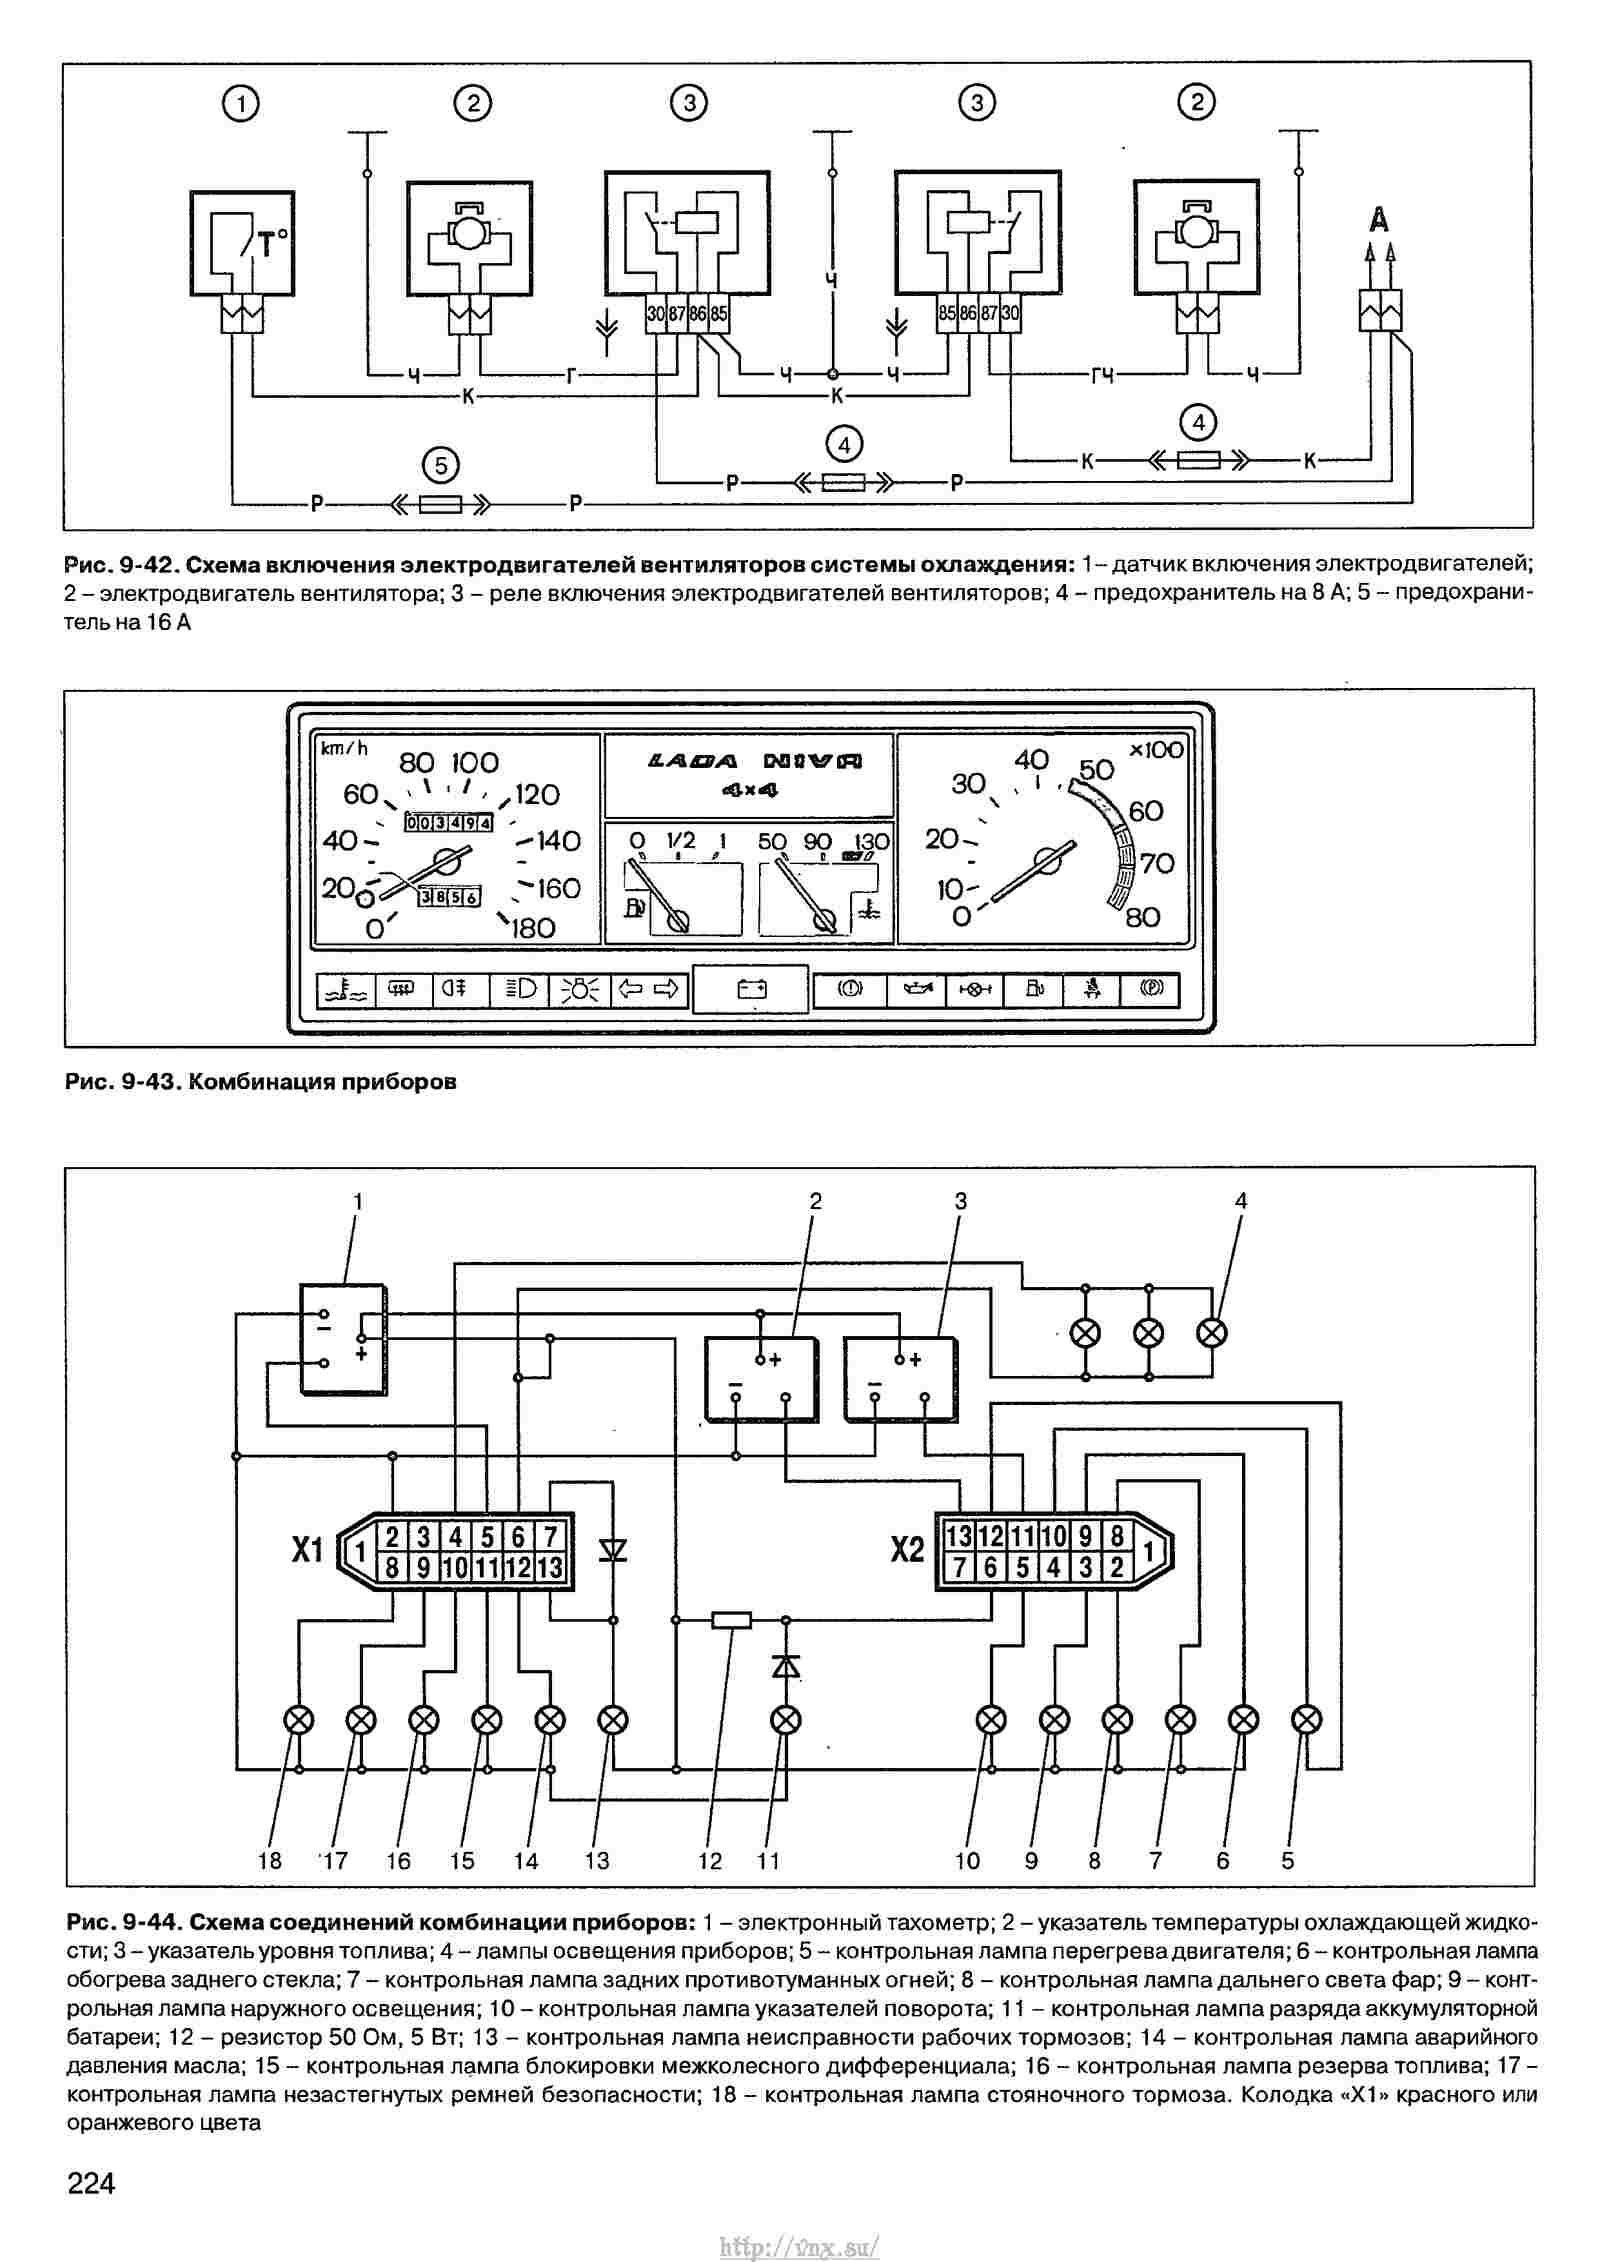 Описание электрической схемы проводки и оборудования ваз 2121